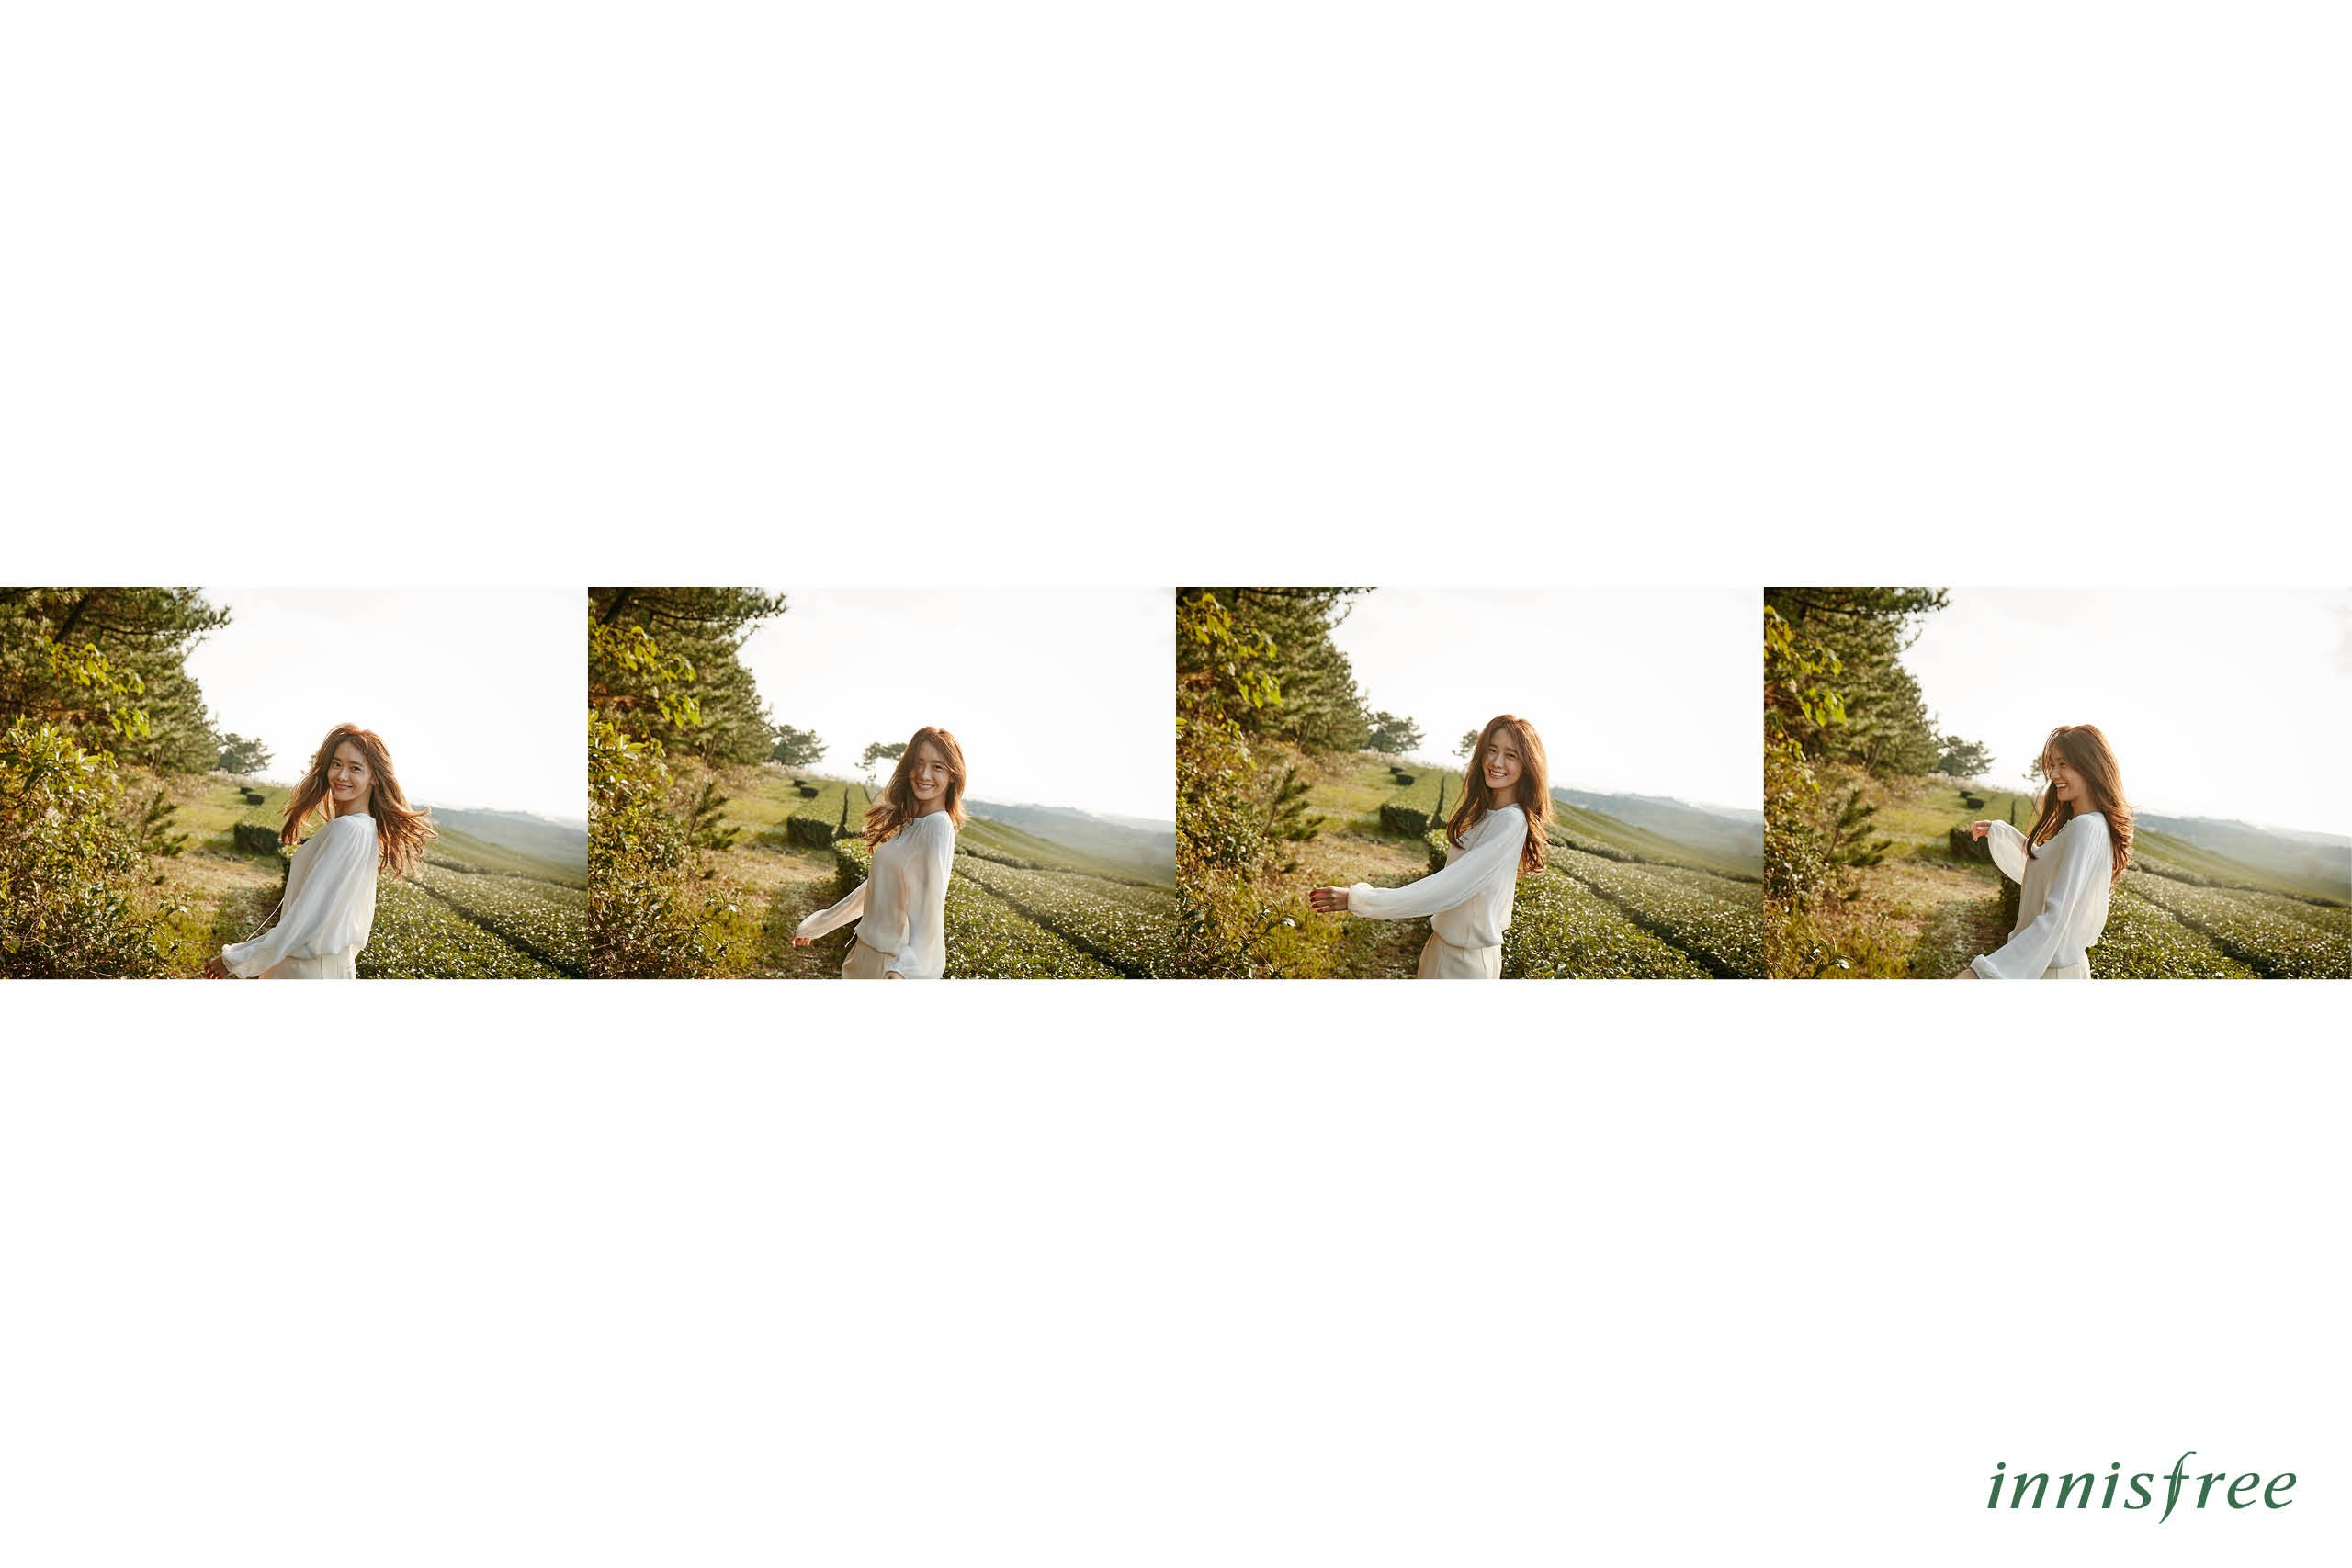 [OTHER][21-07-2012]Hình ảnh mới nhất từ thương hiệu "Innisfree" của YoonA - Page 14 PgbbH9VRA5-3000x3000